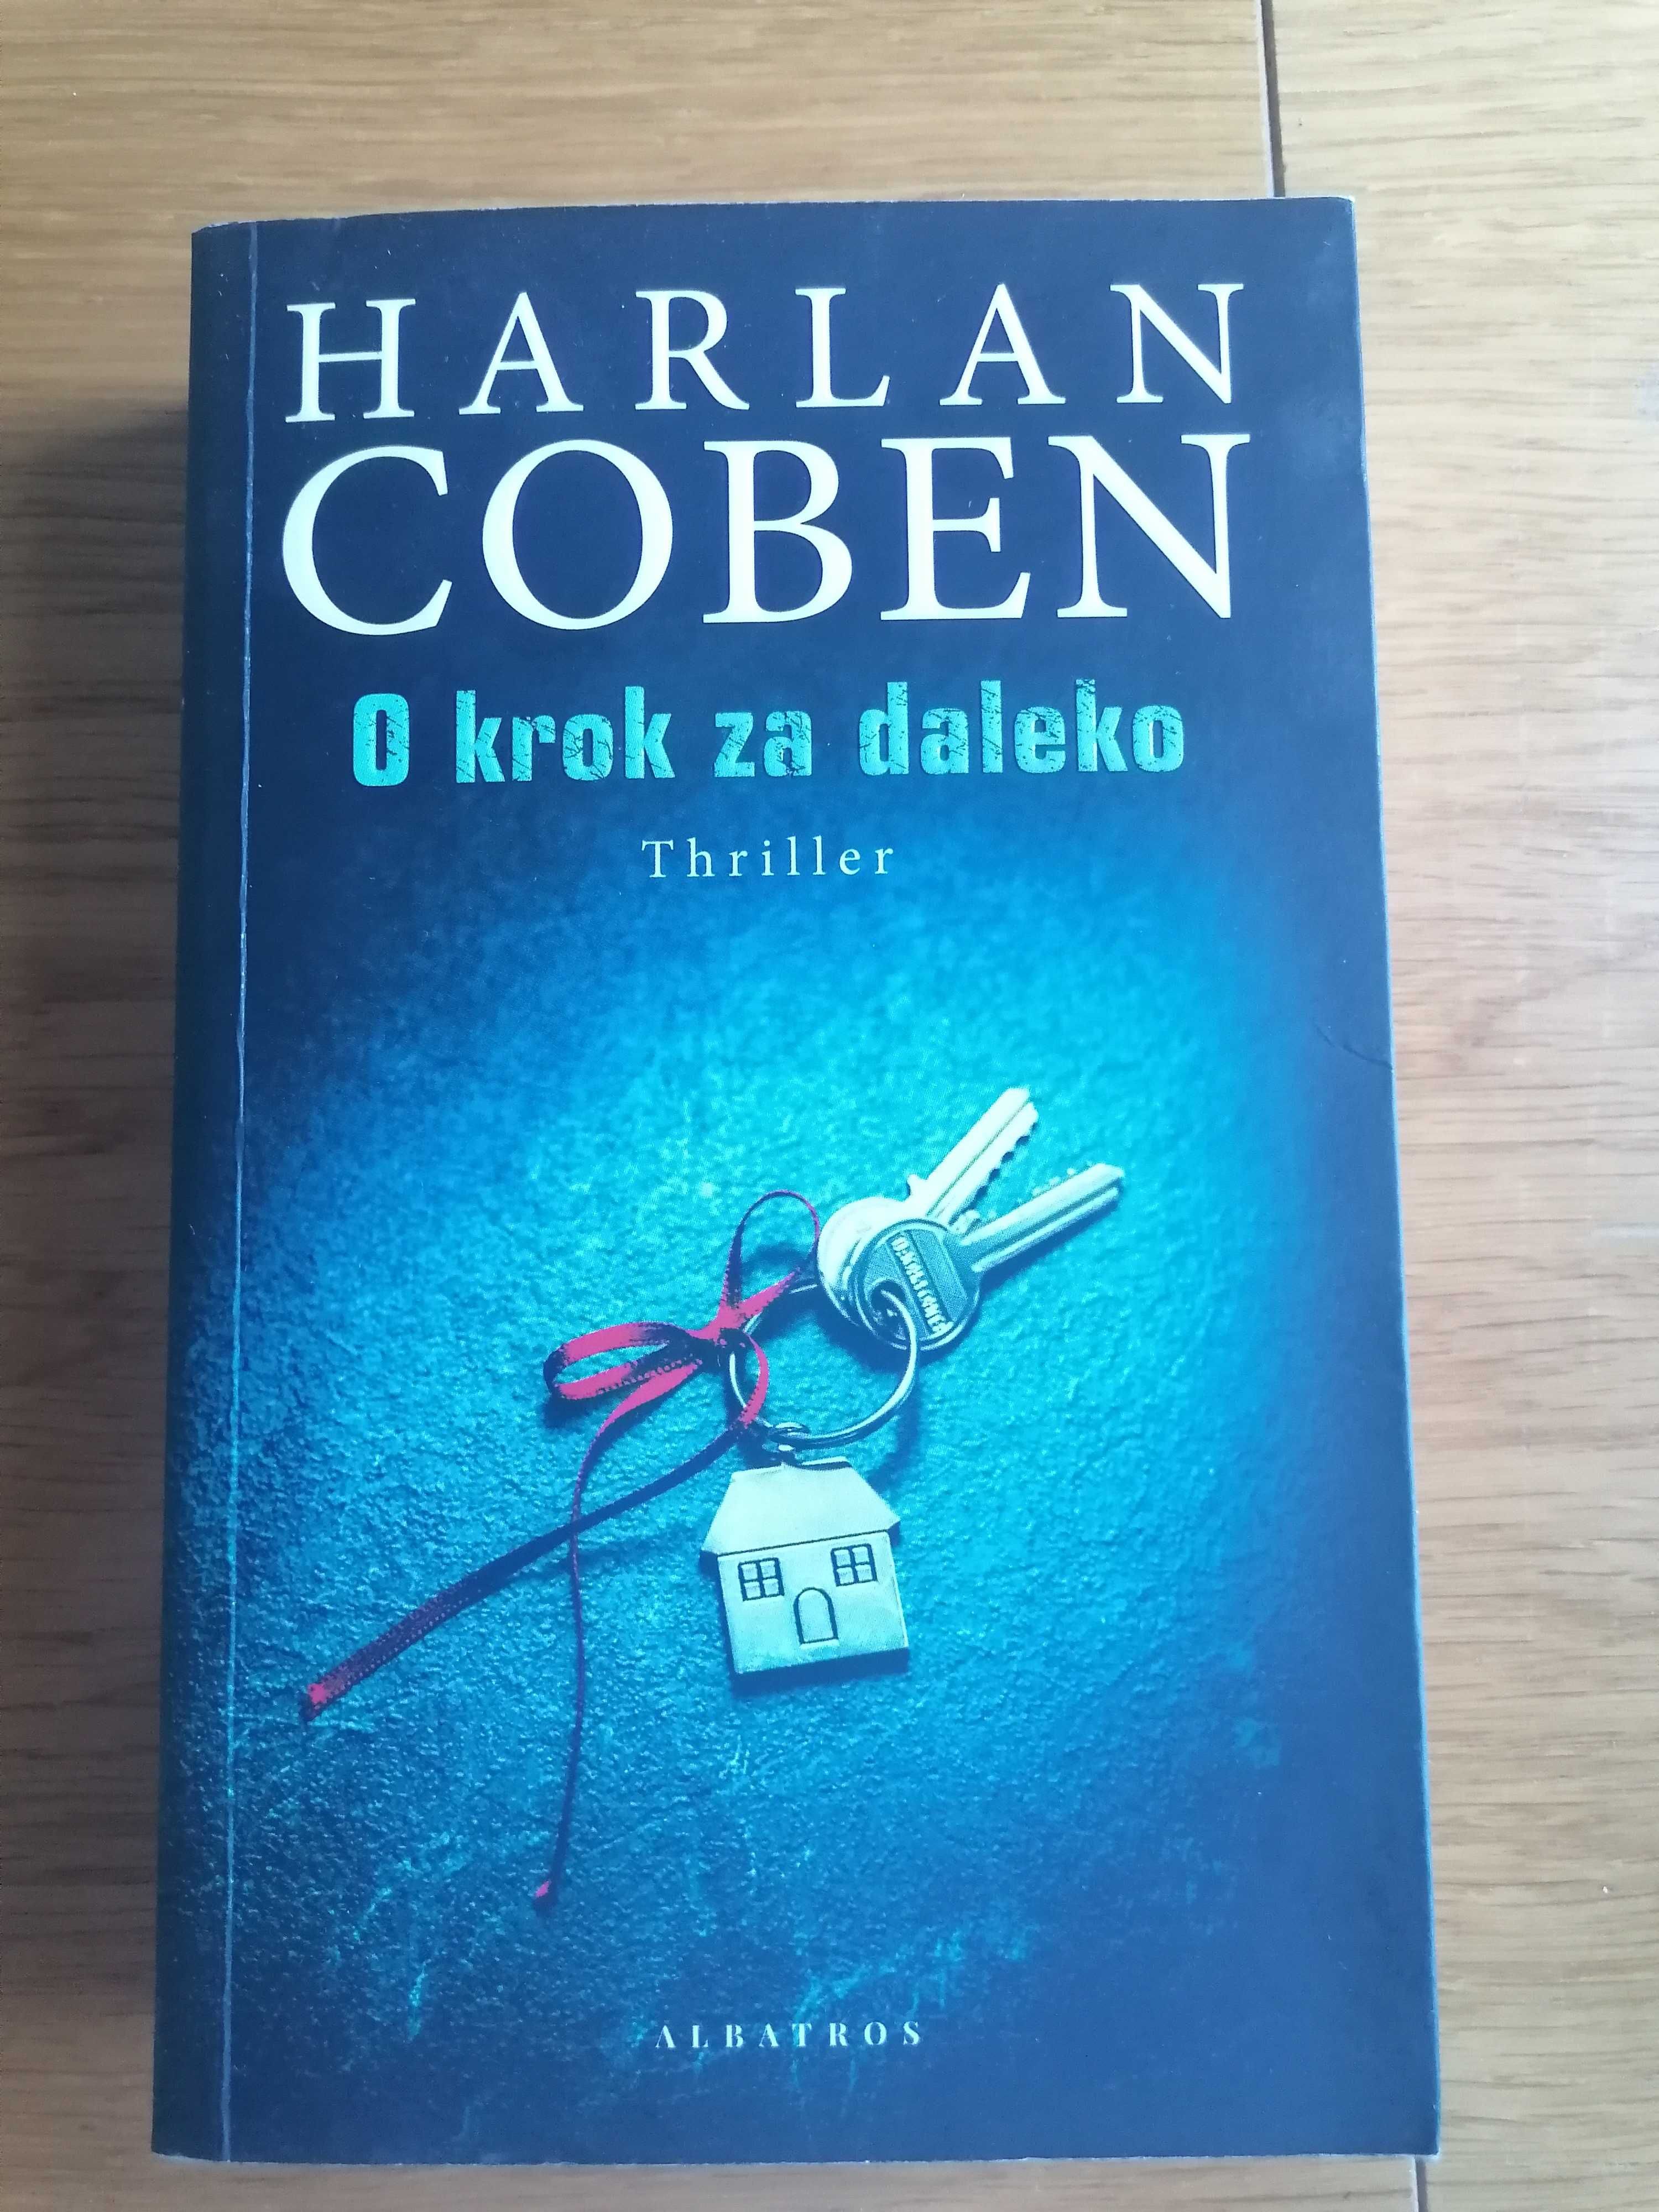 Sprzedam książkę Harlan Coben